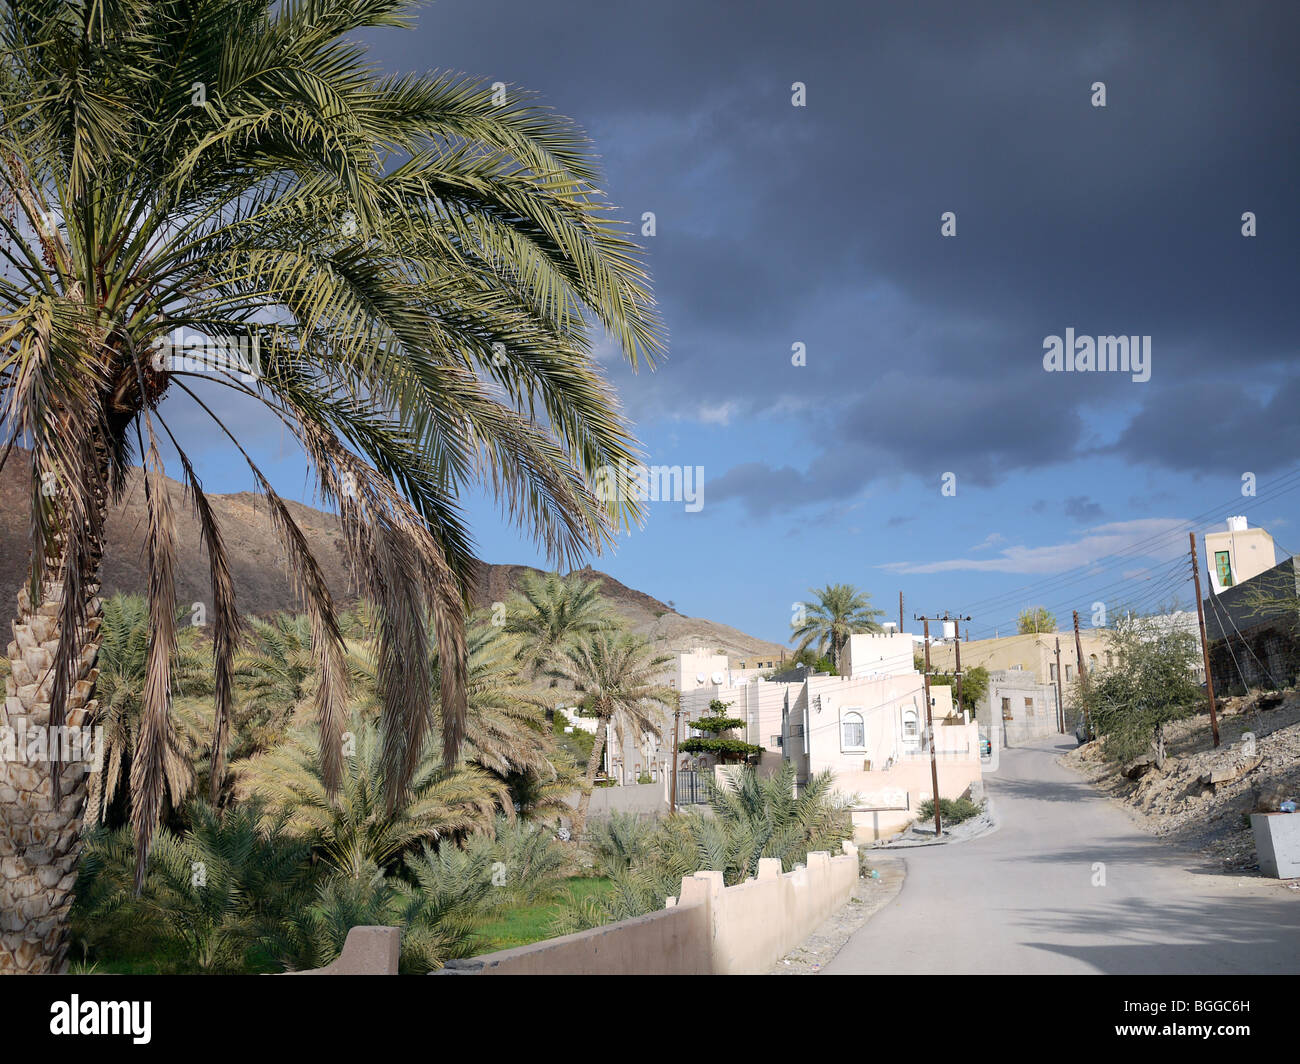 Streetscape in Oman village Stock Photo